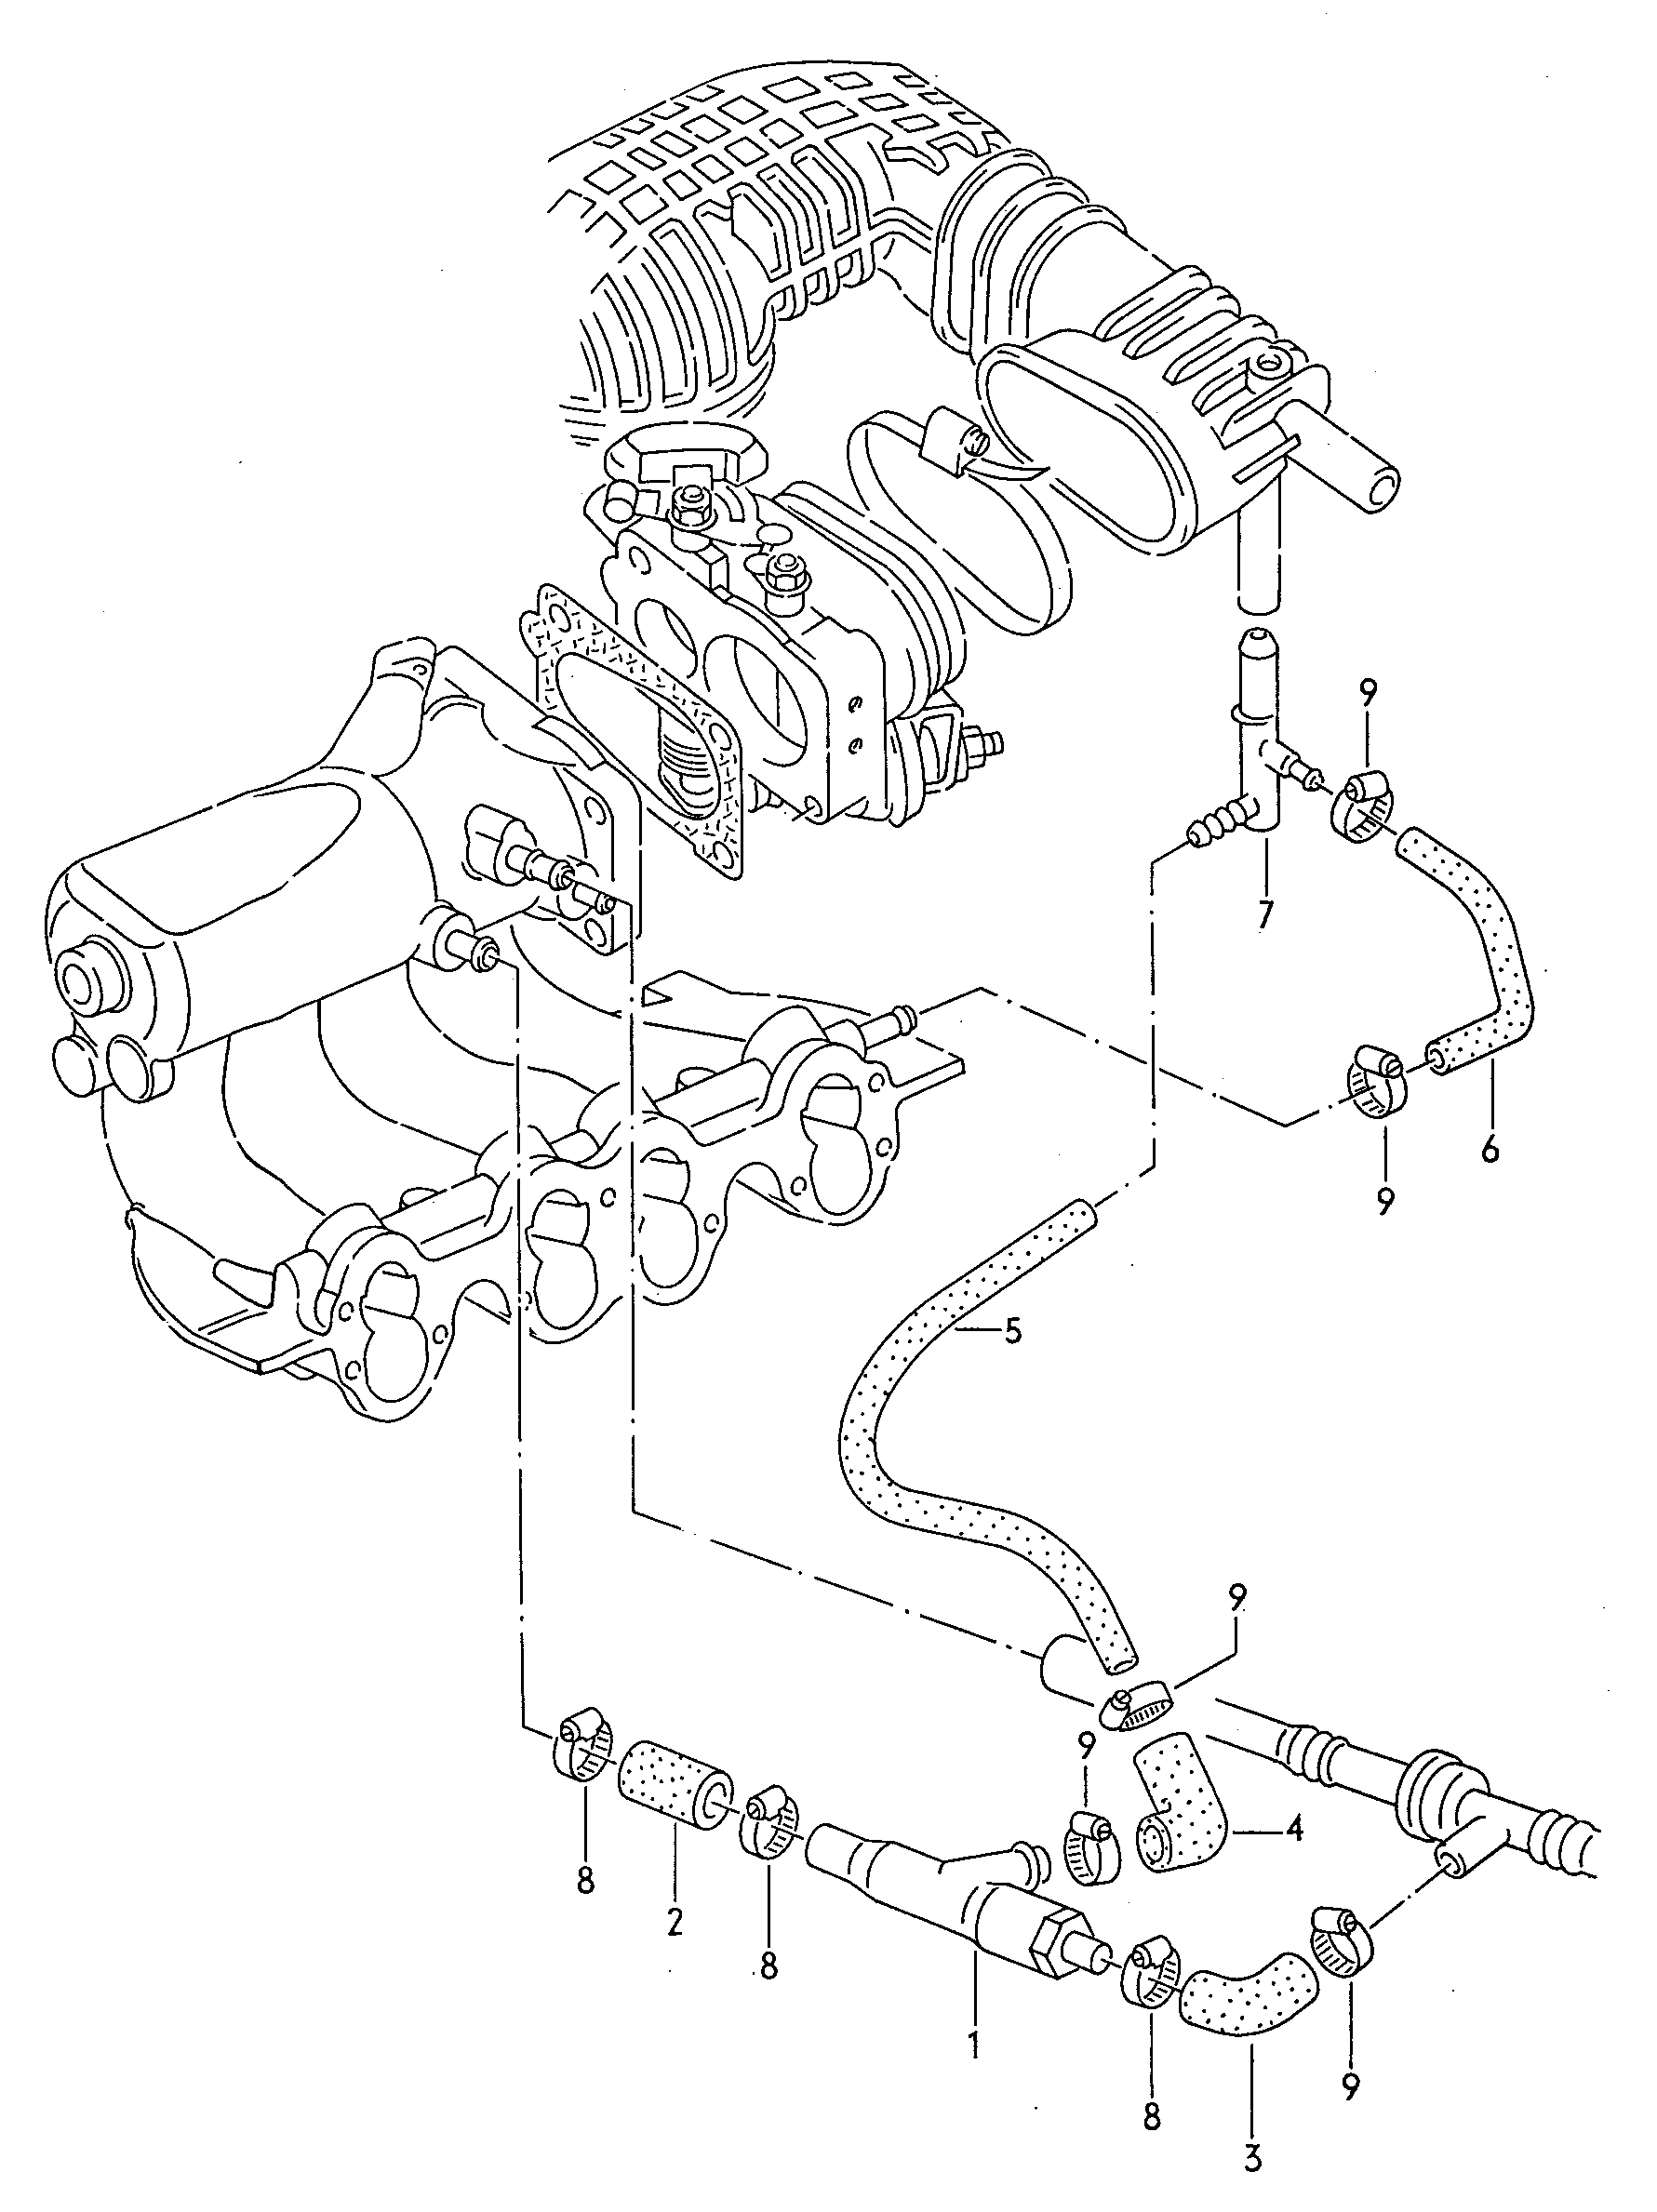 Emme püskürtme pompası 1,8Ltr. - Audi 80/90/Avant - a80